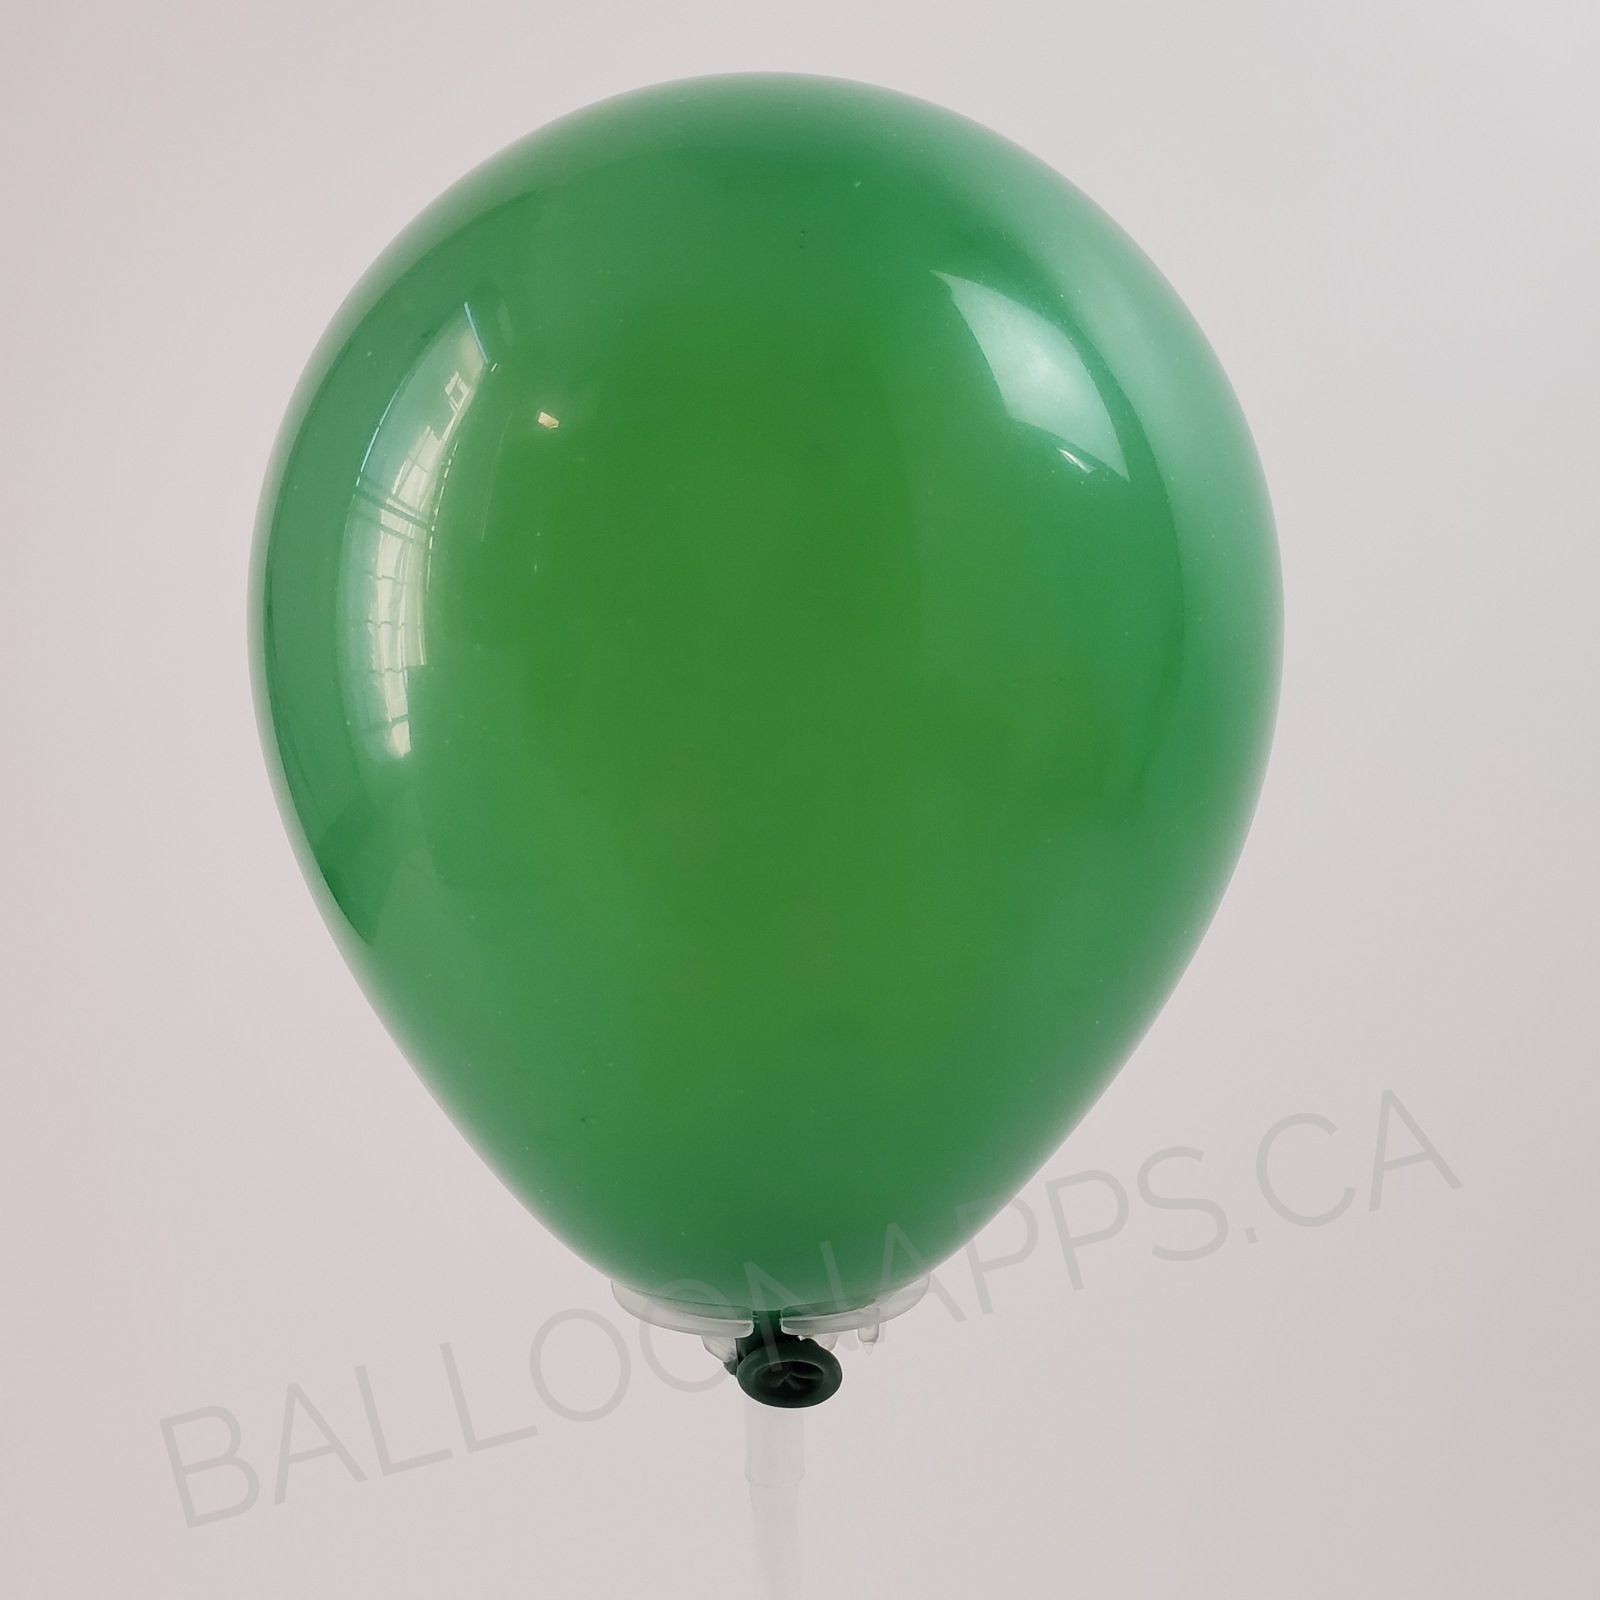 balloon texture Q (100) 350 Standard Green balloons